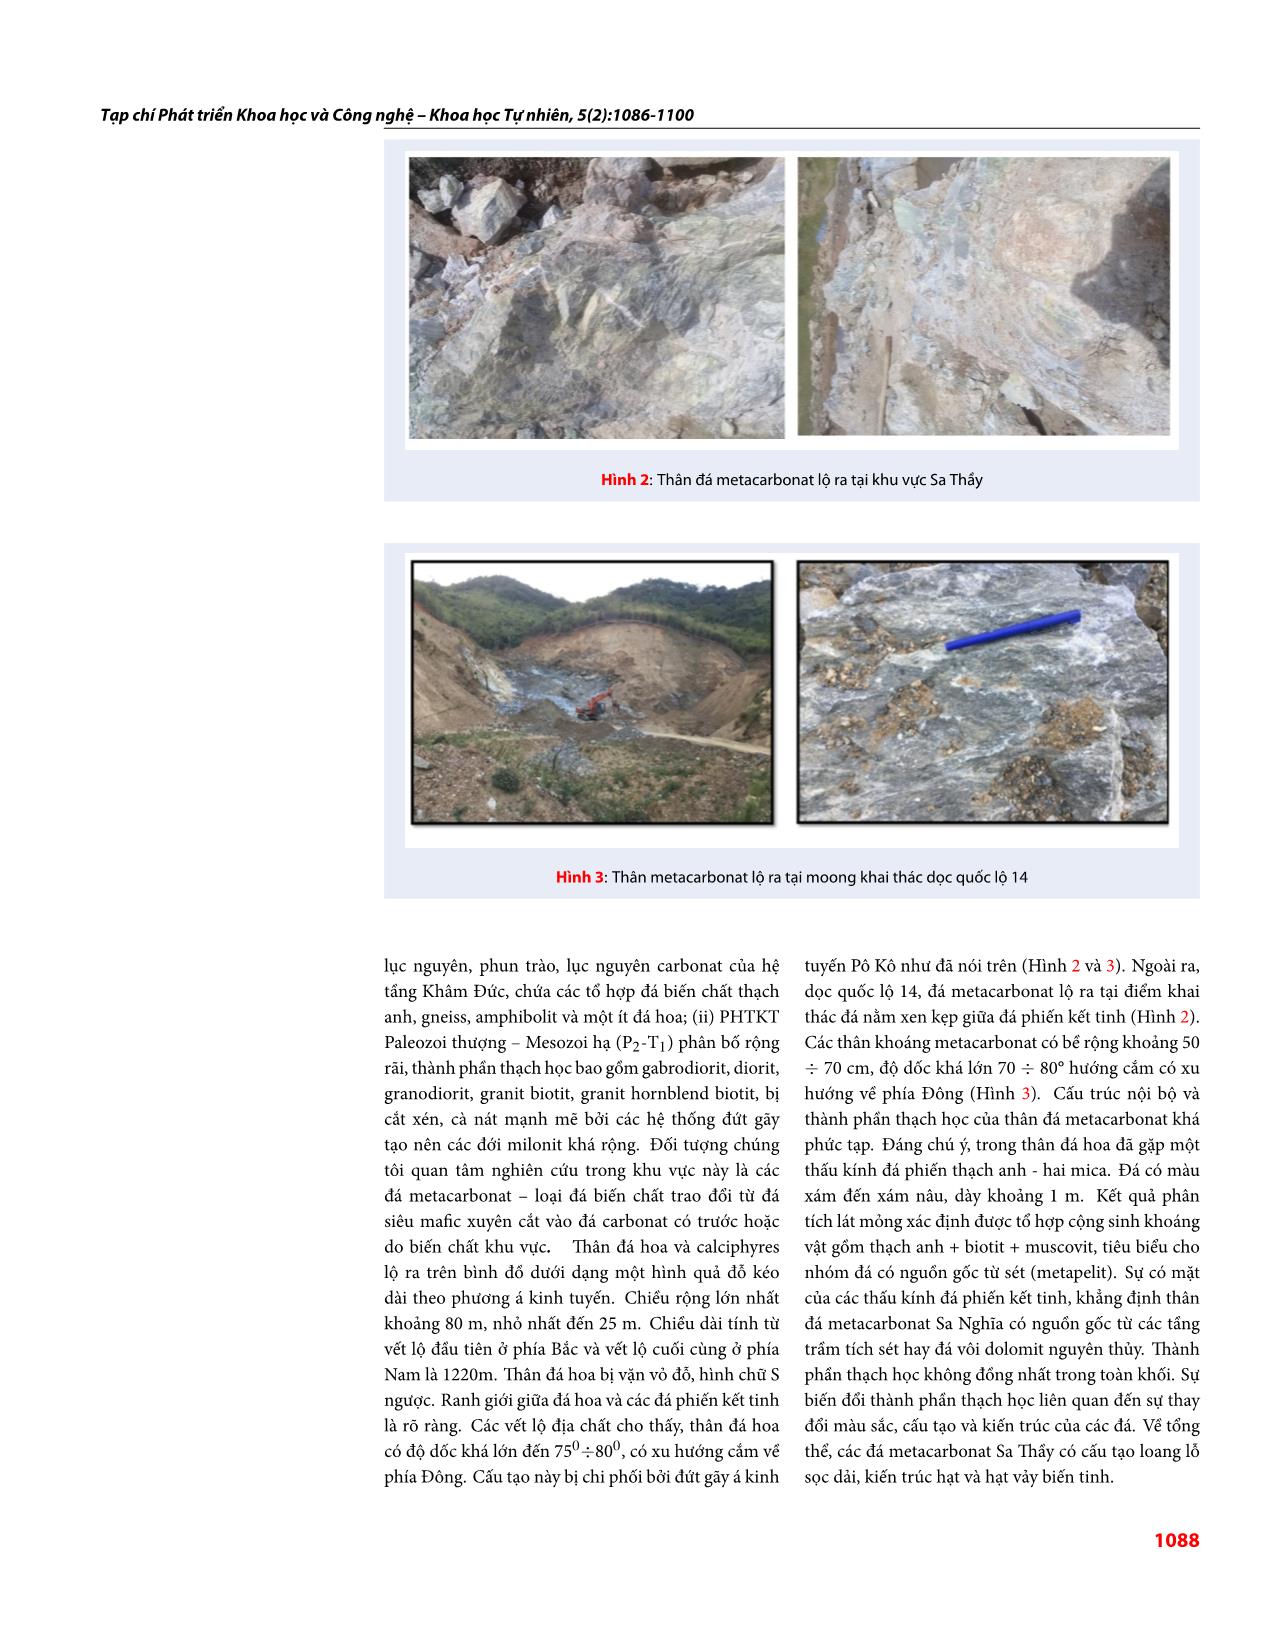 Đặc điểm thành phần khoáng vật trong đá metacarbonat khu vực Sa Thầy, Kon Tum và khả năng ứng dụng của metacarbonat trong đá mỹ nghệ trang 3